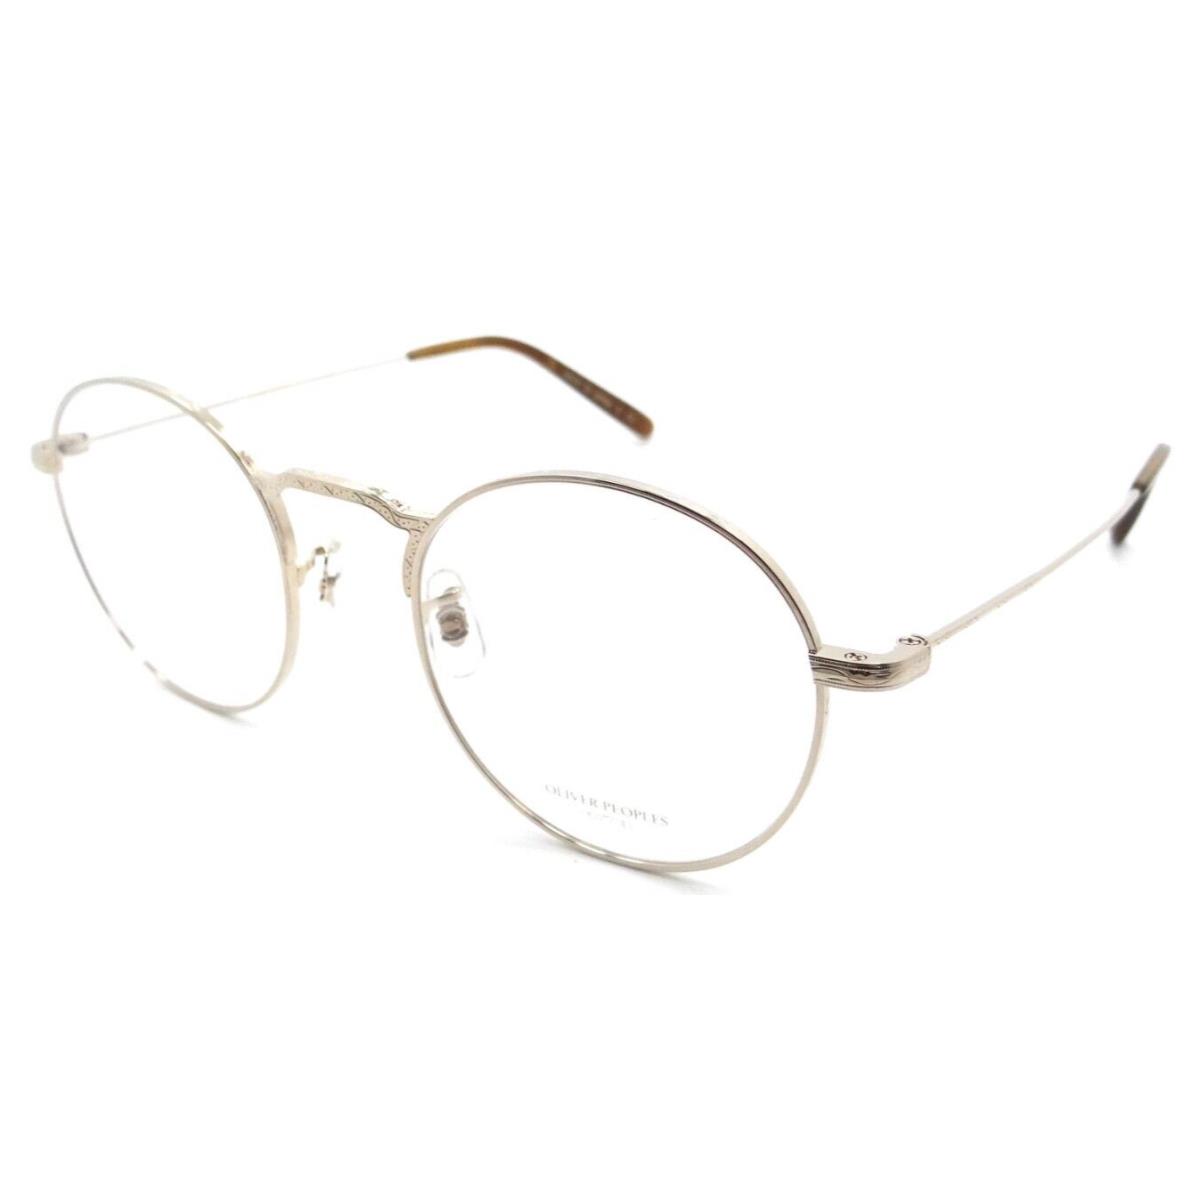 Oliver Peoples Eyeglasses Frames OV 1282T 5292 49-20-145 Weslie White Gold Japan